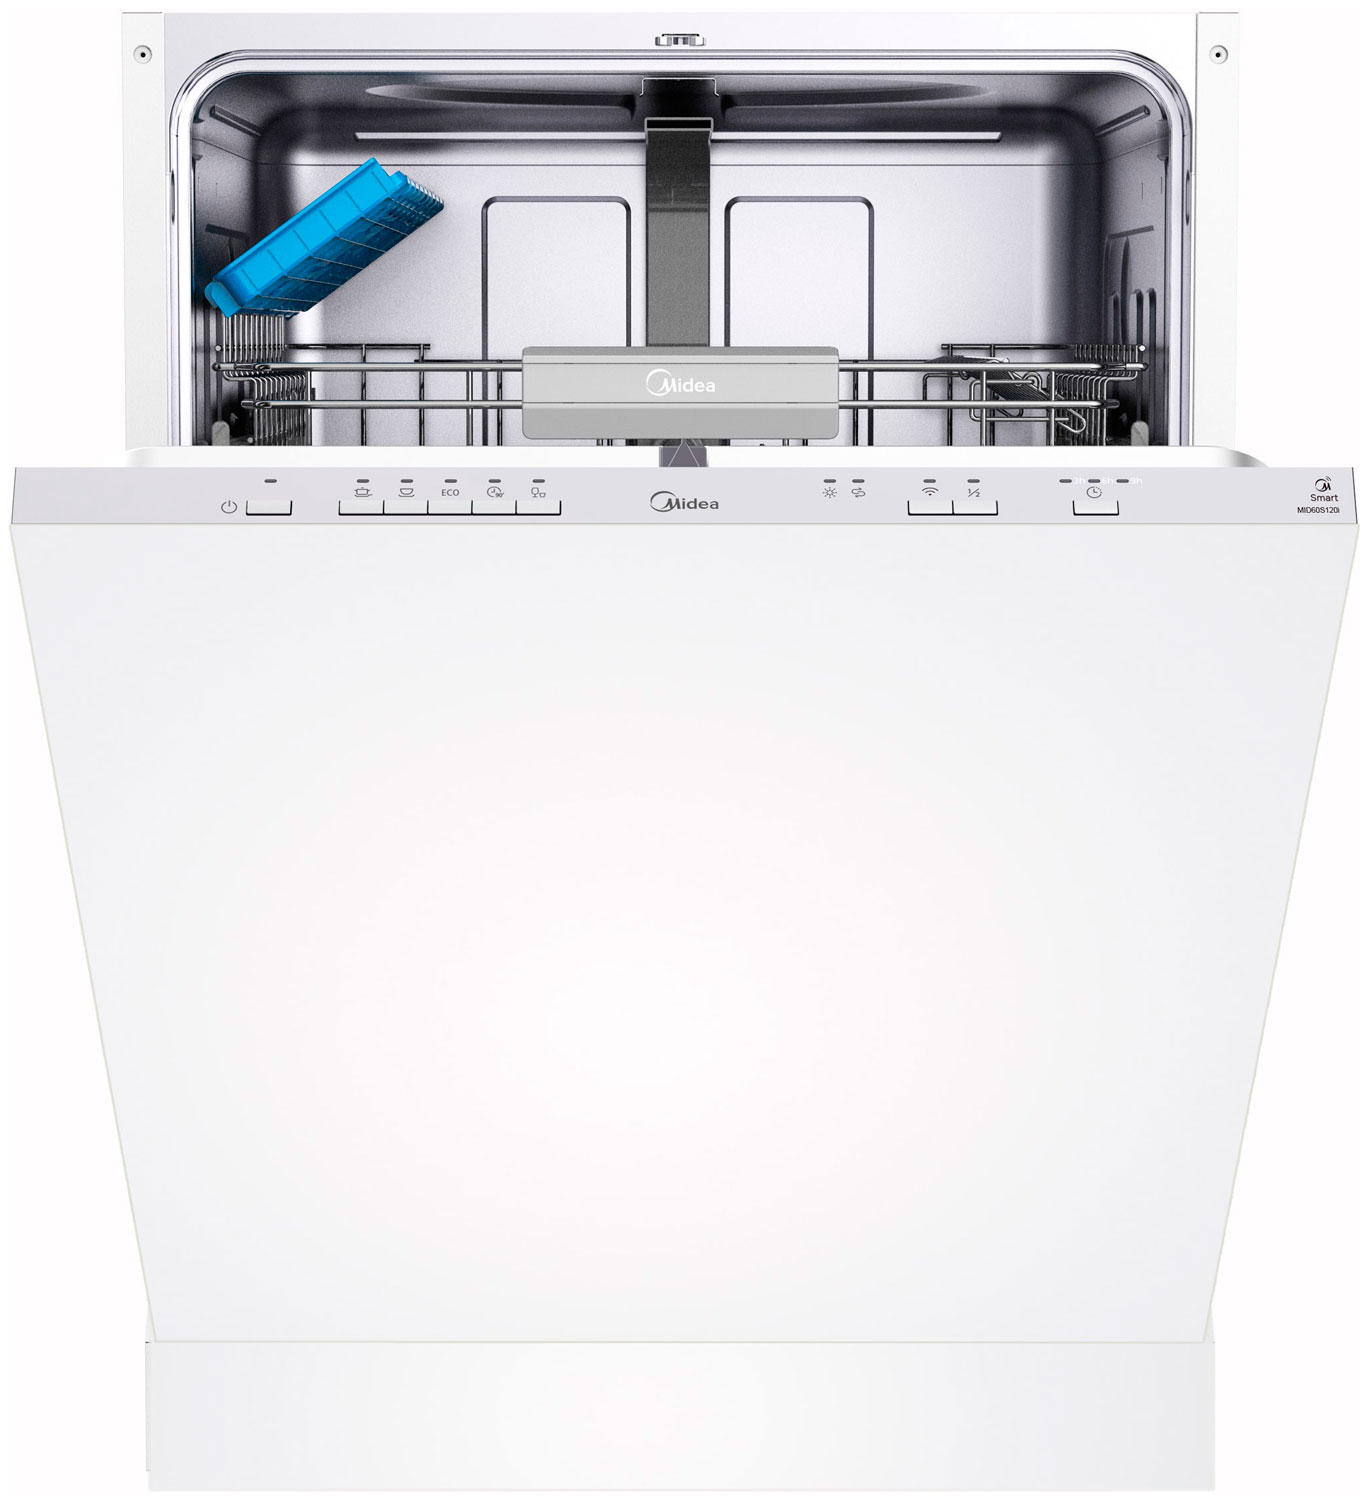 Встраиваемая посудомоечная машина Midea MID60S120i встраиваемая посудомоечная машина midea mid60s450i